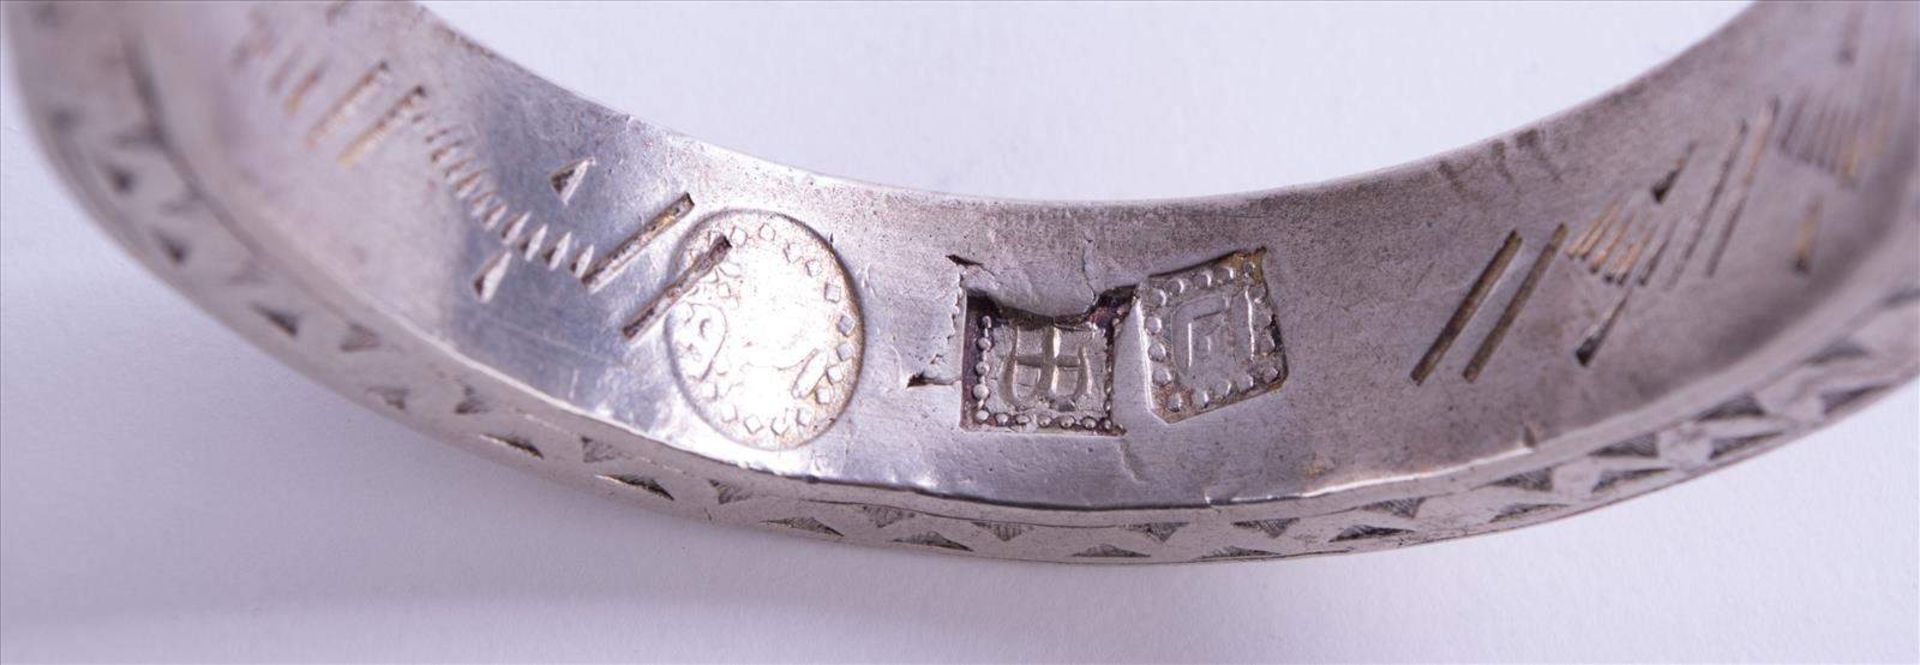 Paar Armreife Afrika / Pair of bracelets, Africa Silber geprüft, innen mehrfach gepunzt, B: ca. 1, - Bild 4 aus 6